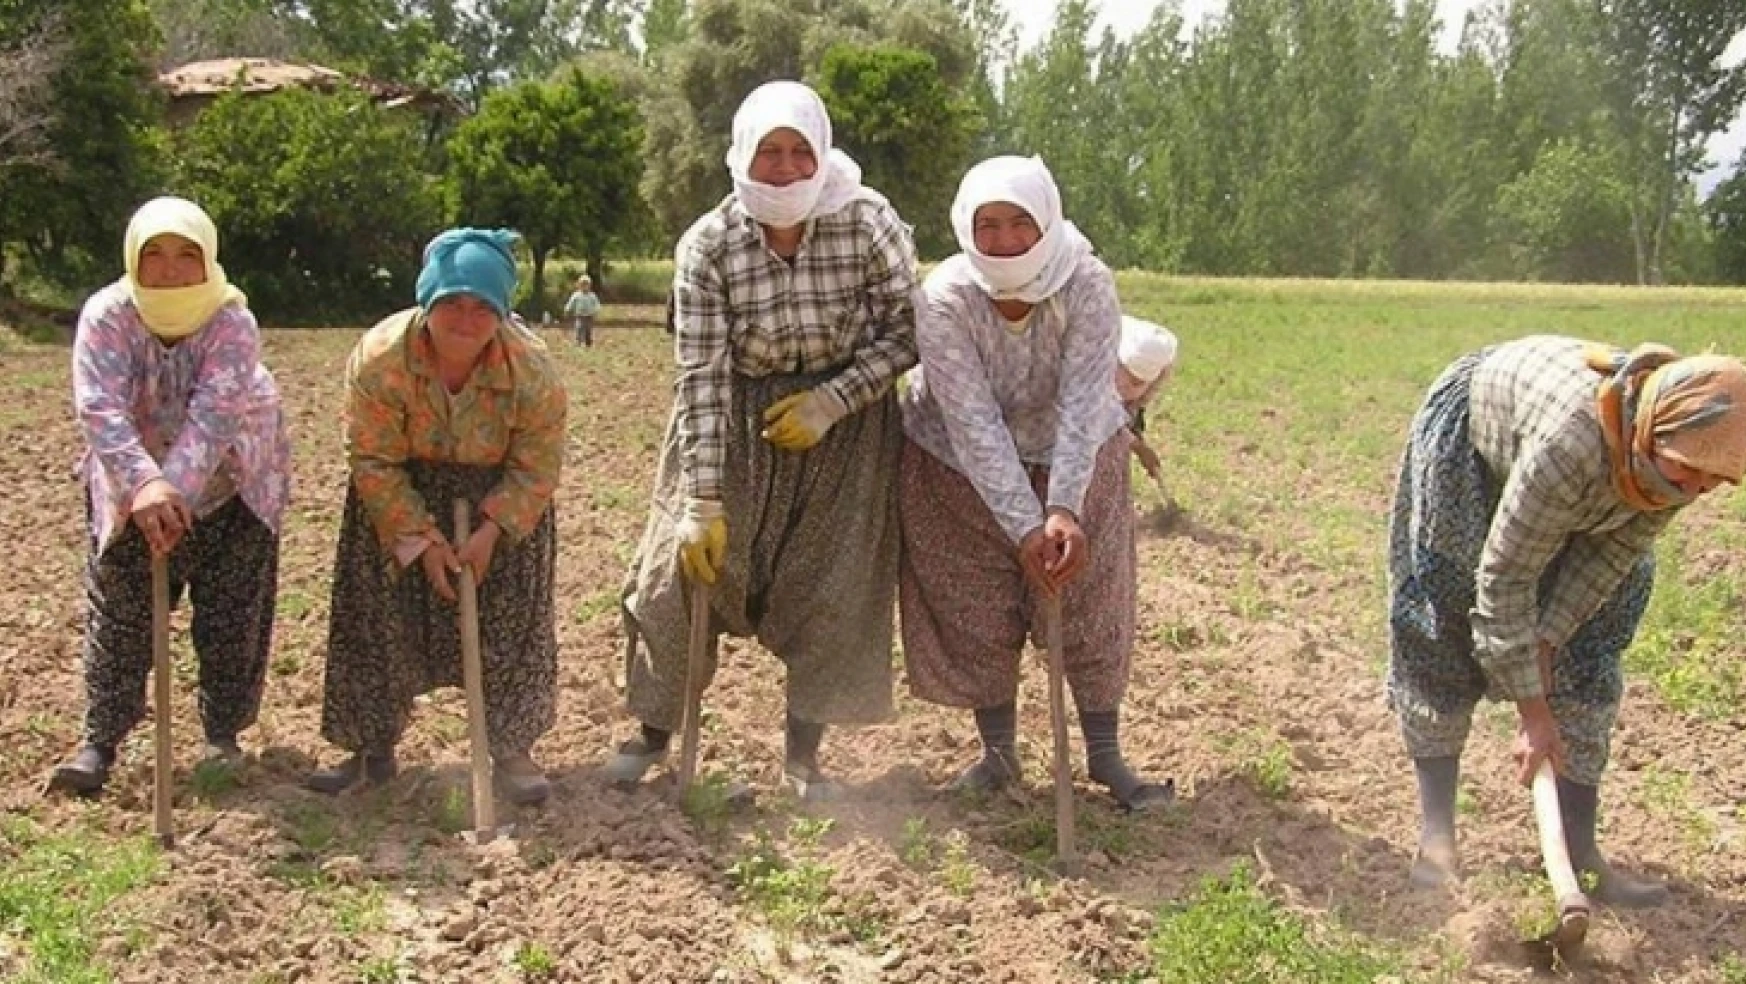 15 Ekim Dünya Kadın Çiftçiler Günü